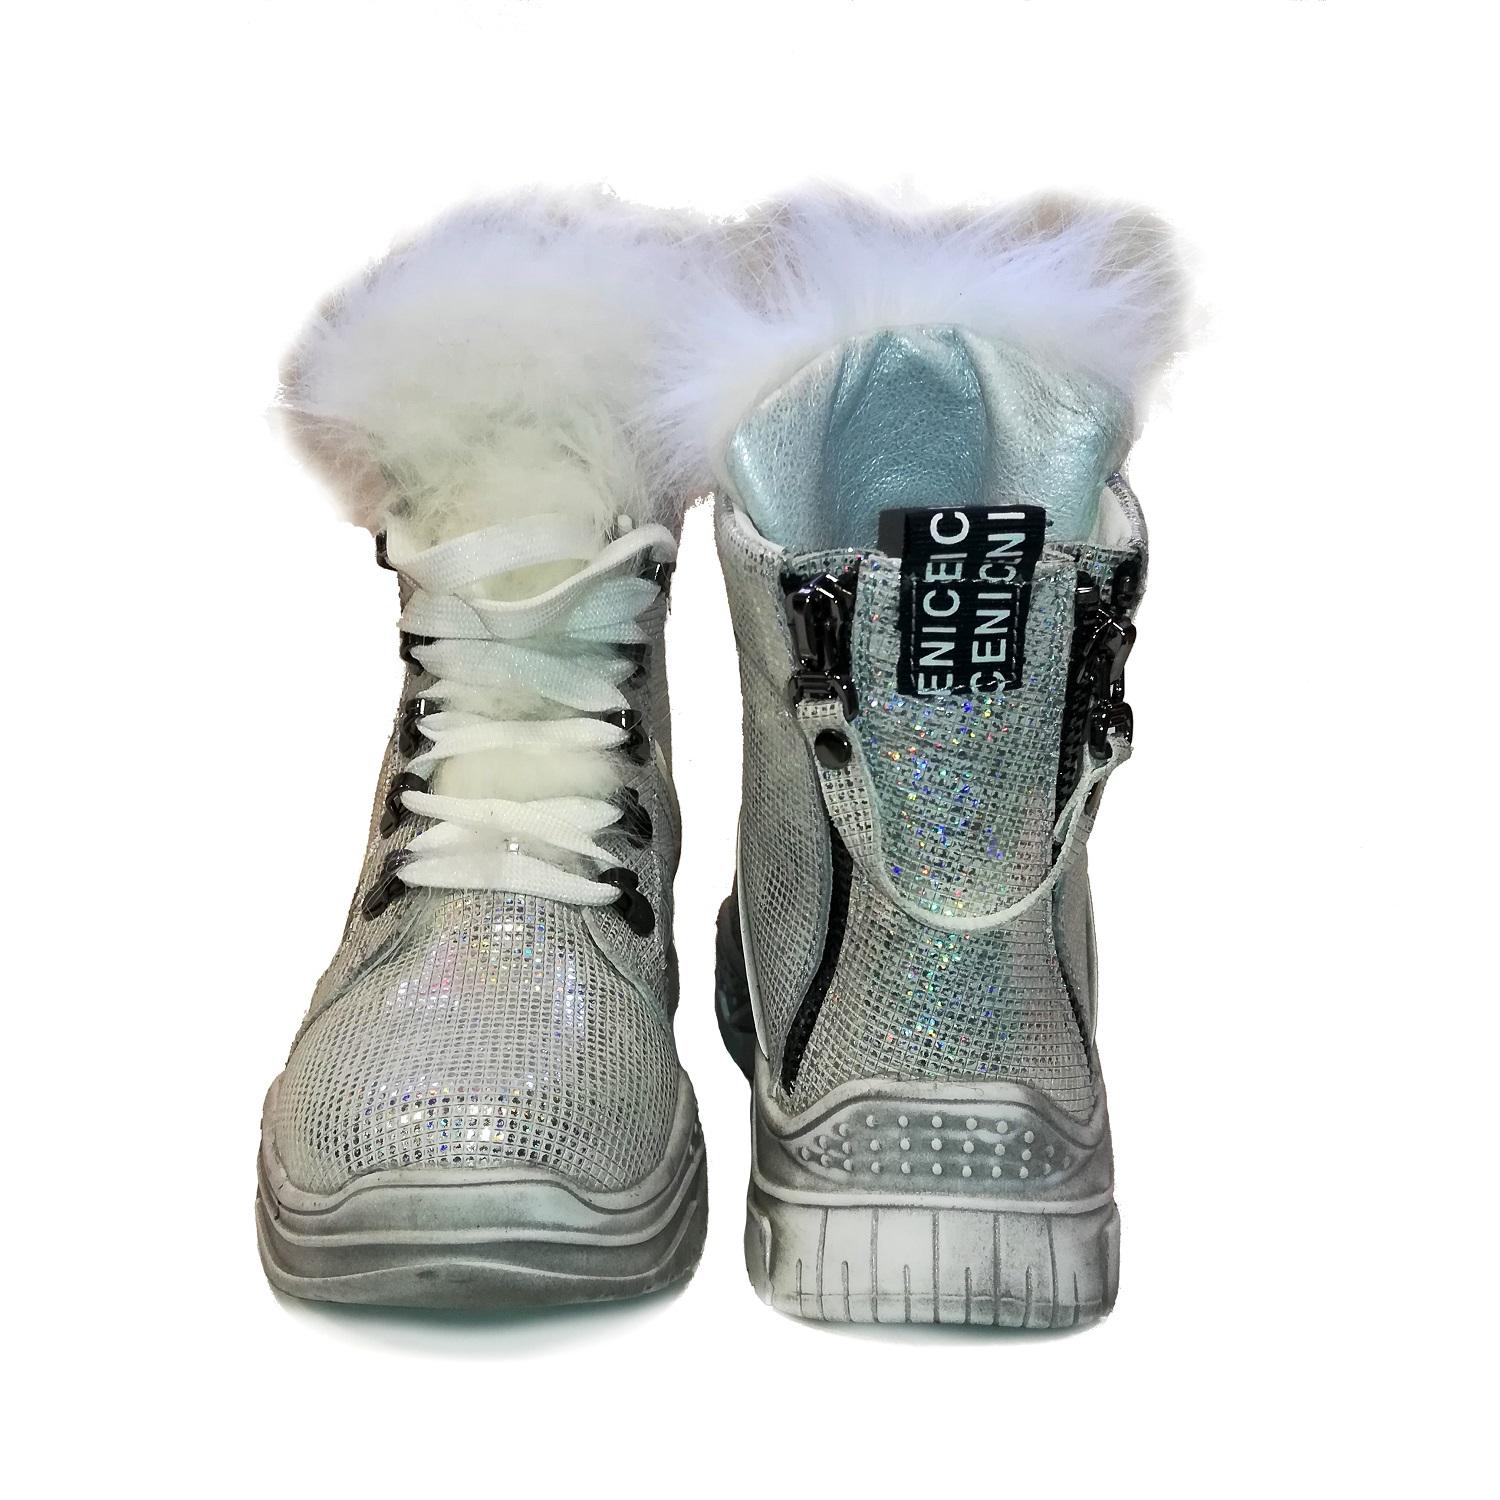 Дитячі зимові черевики для дівчинки, сріблясті (98322/502/177, 90322/502/177), Bistfor